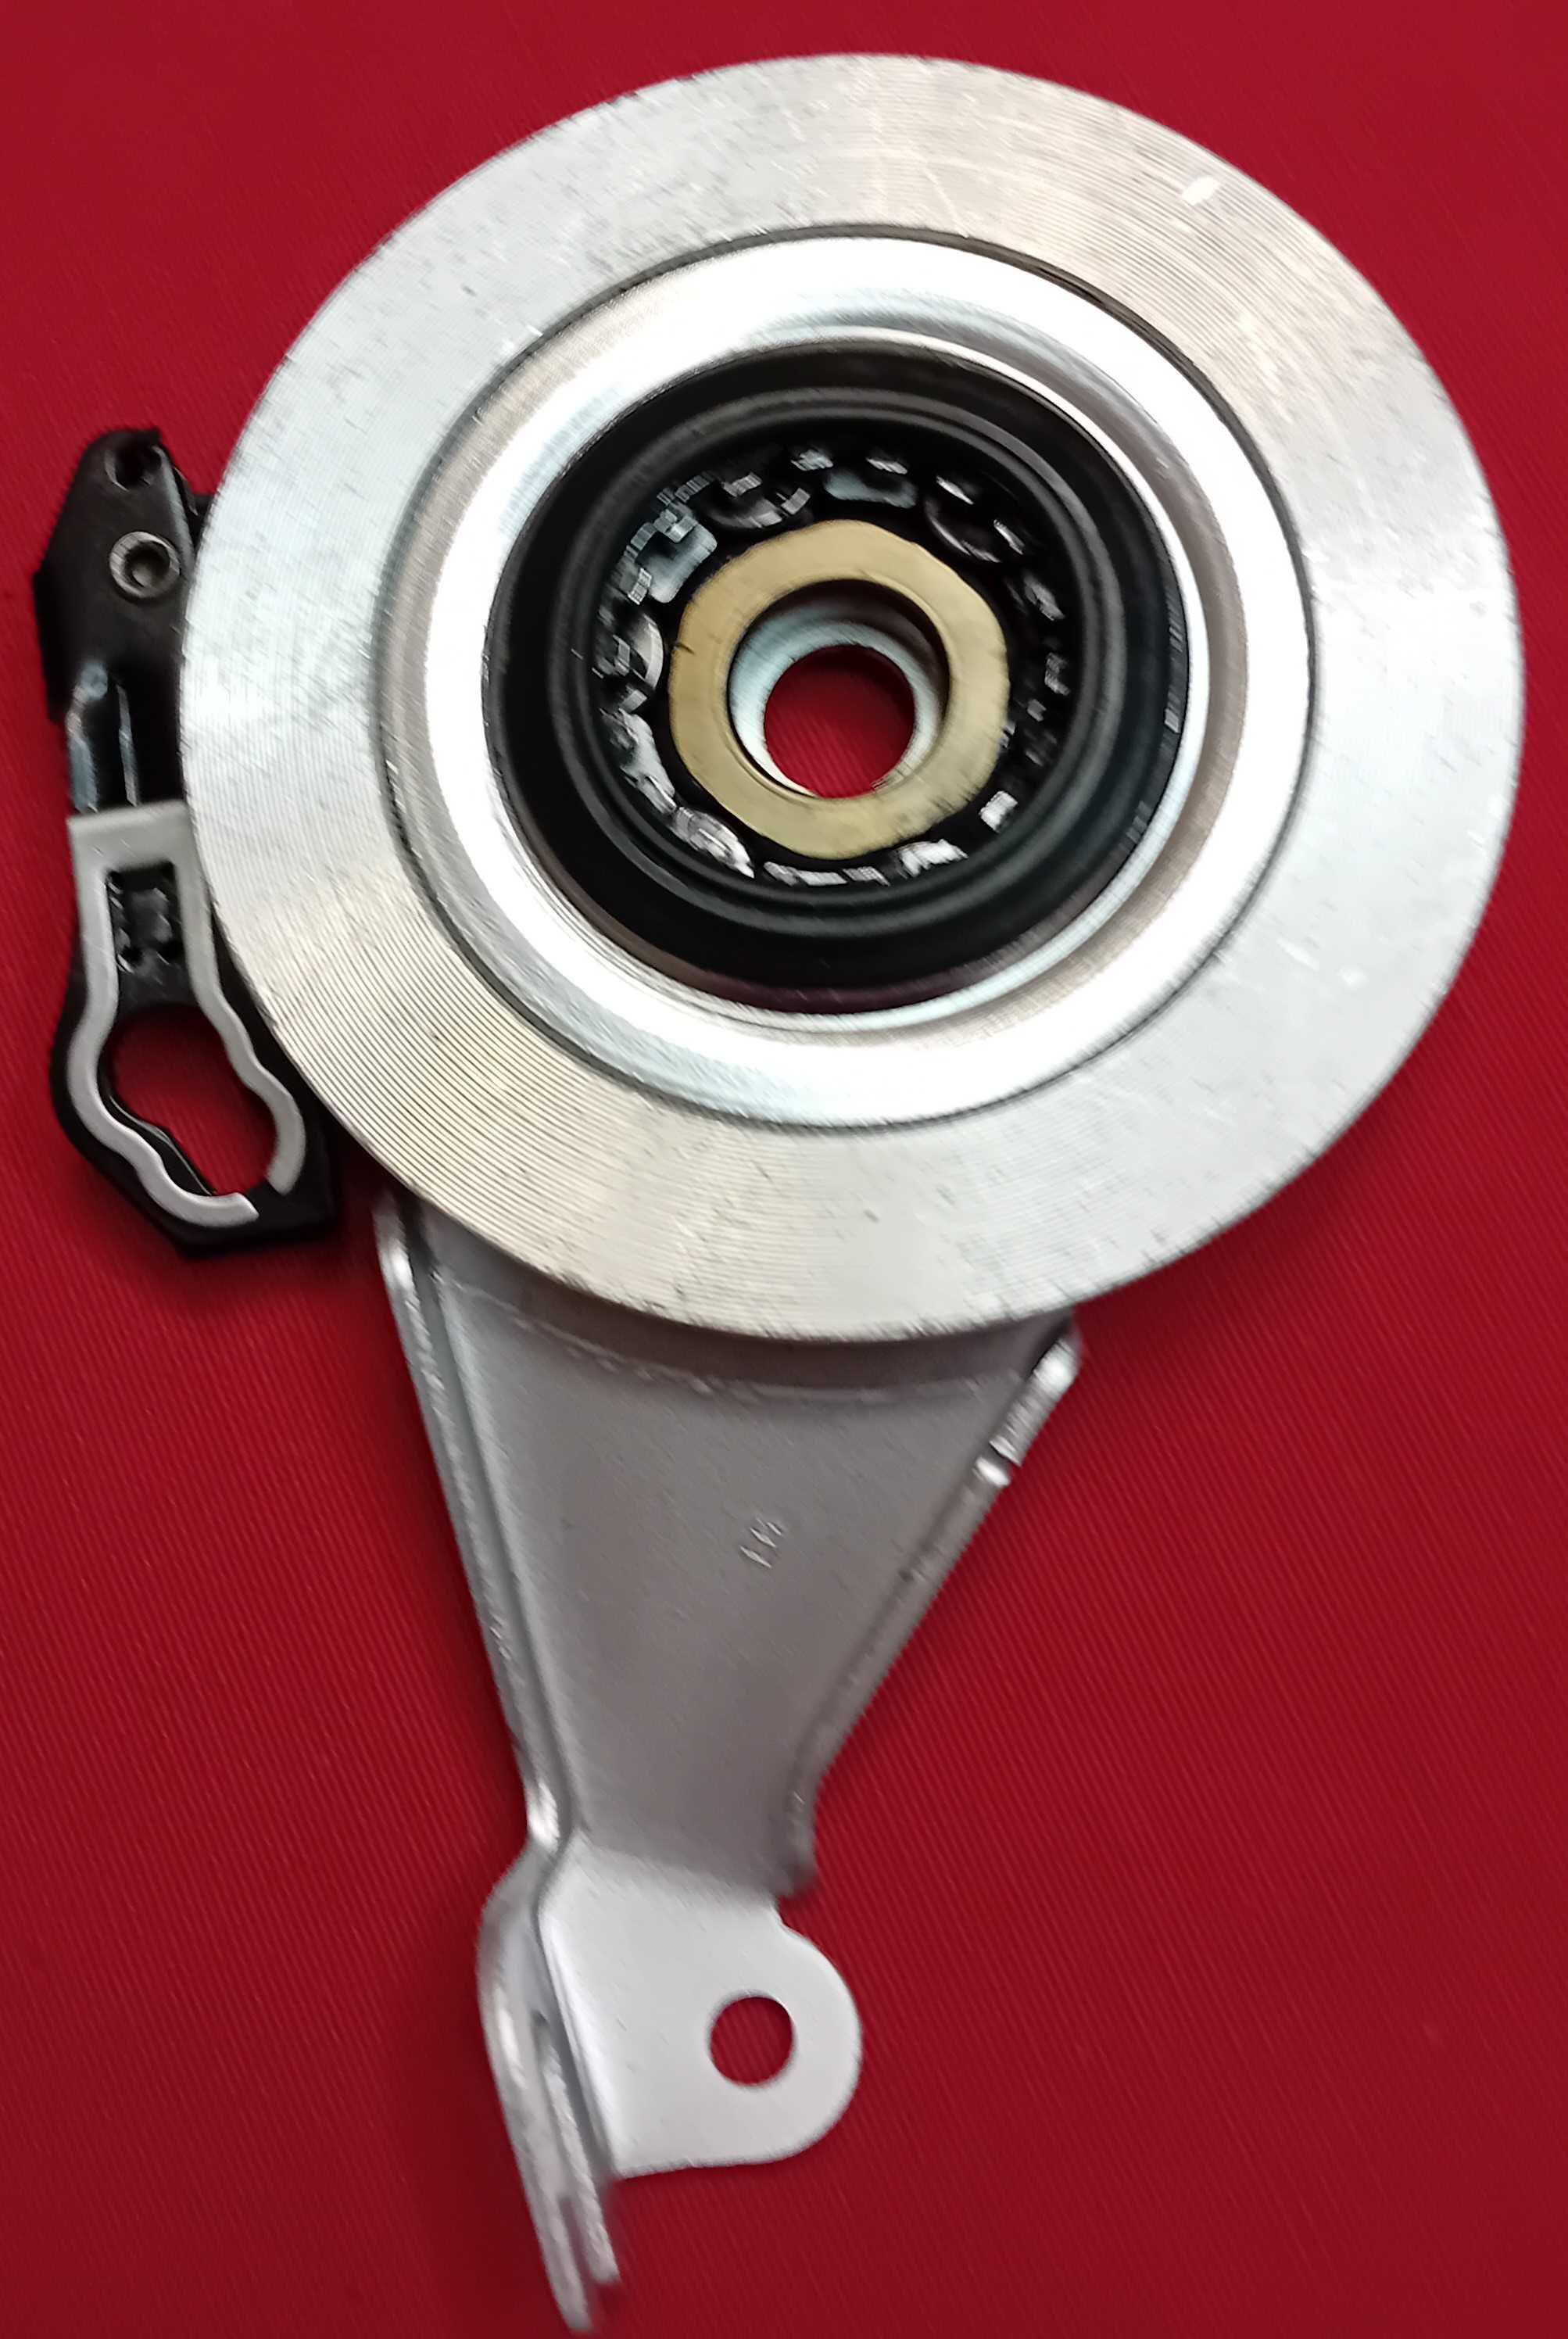 Hamulec rolkowy tylny Shimano  INTER M  BR-IM53-R srebrny.